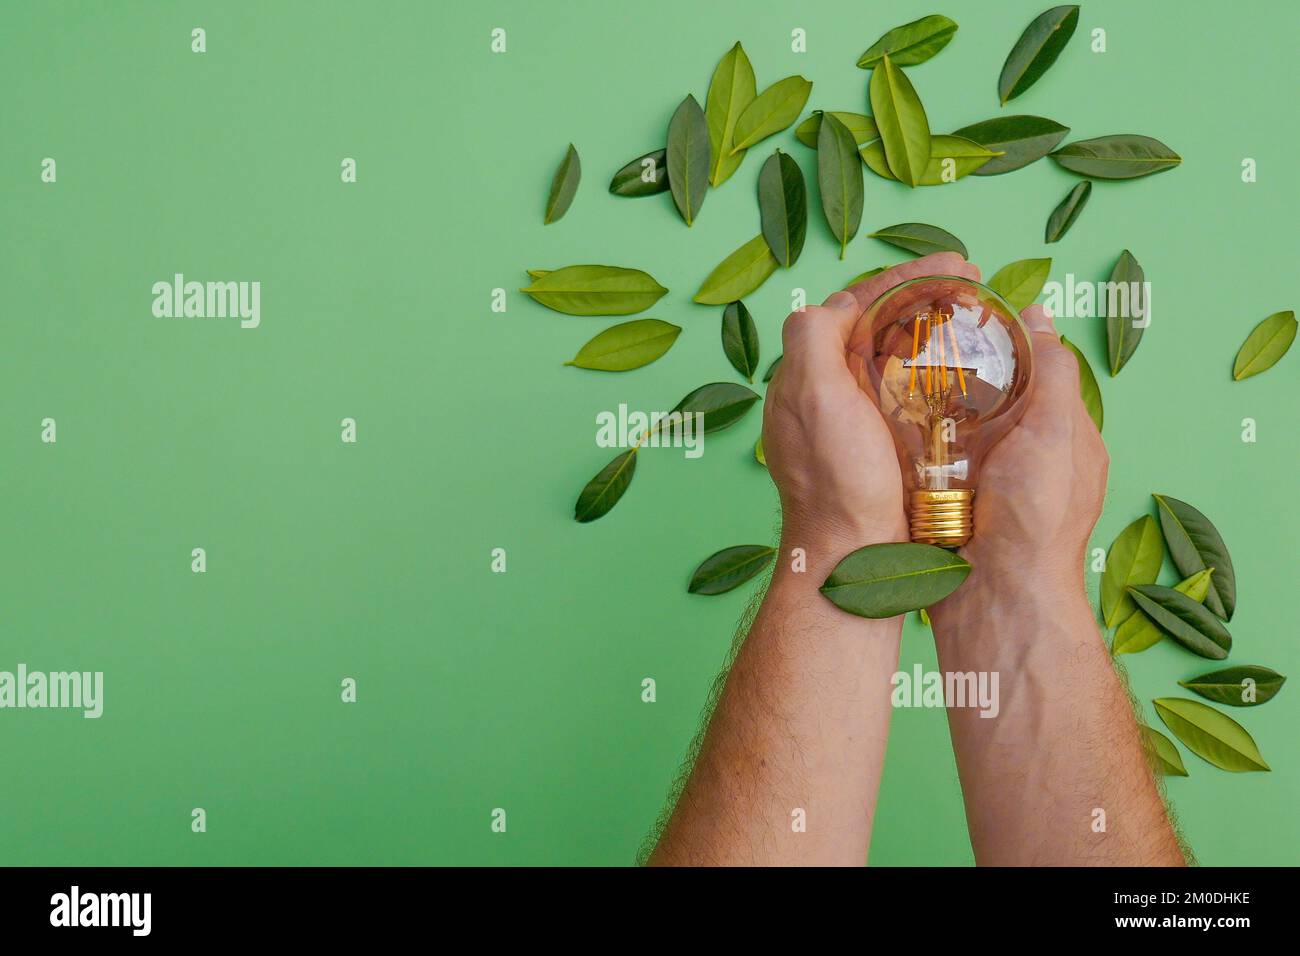 Energia rinnovabile.Elettricità e energia verde Concept.Light bulbo in una mano maschio e foglie verdi su un fondo verde.energia naturale alternativa Foto Stock